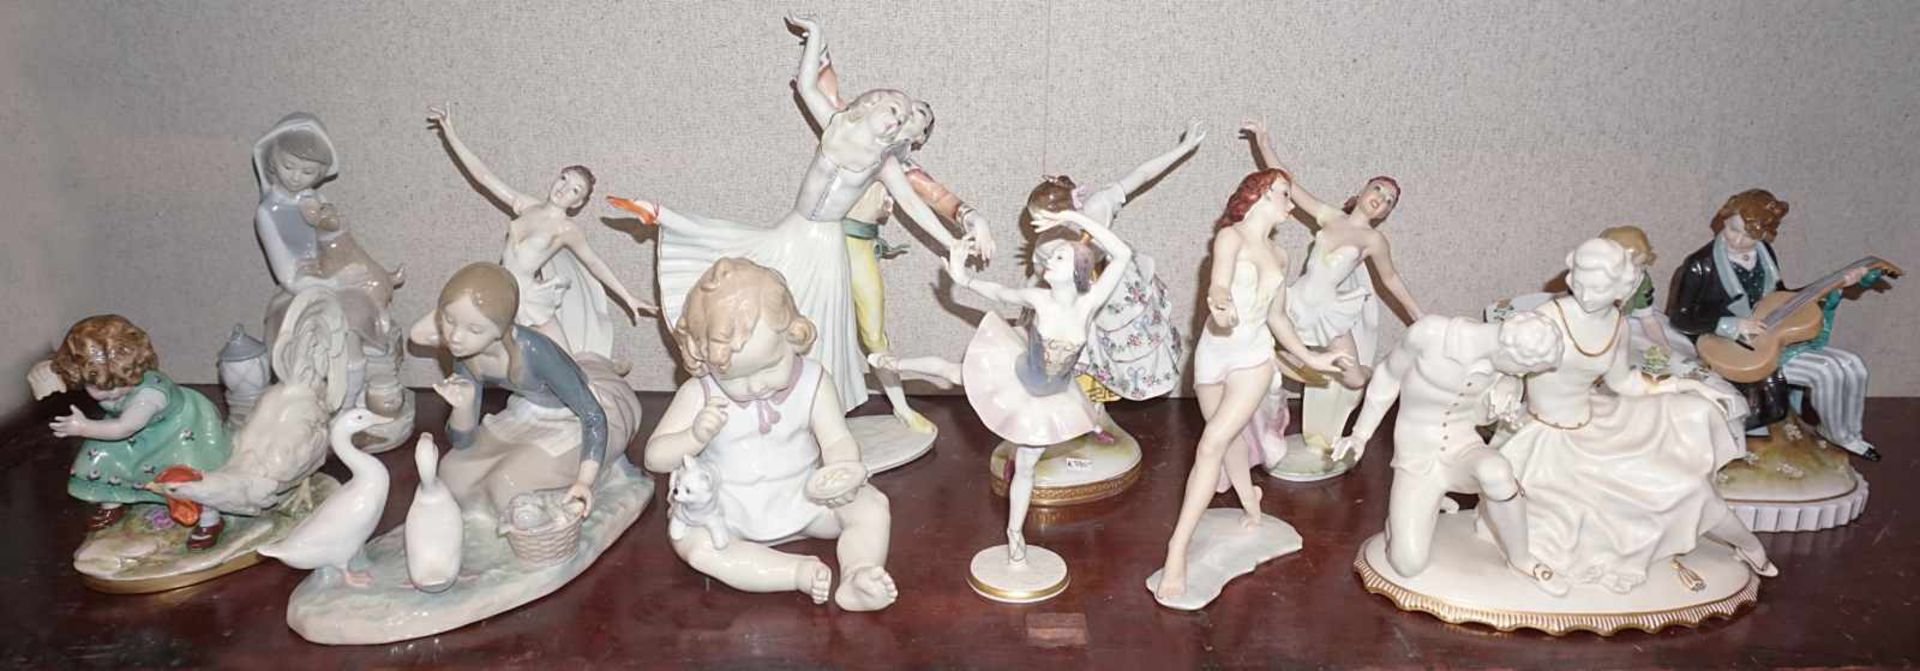 1 Konv. Porzellanfiguren HUTSCHENREUTHER LLADRO u.a."Tänzerinnen" "Gänsemagd" "Musizierendes - Bild 2 aus 2